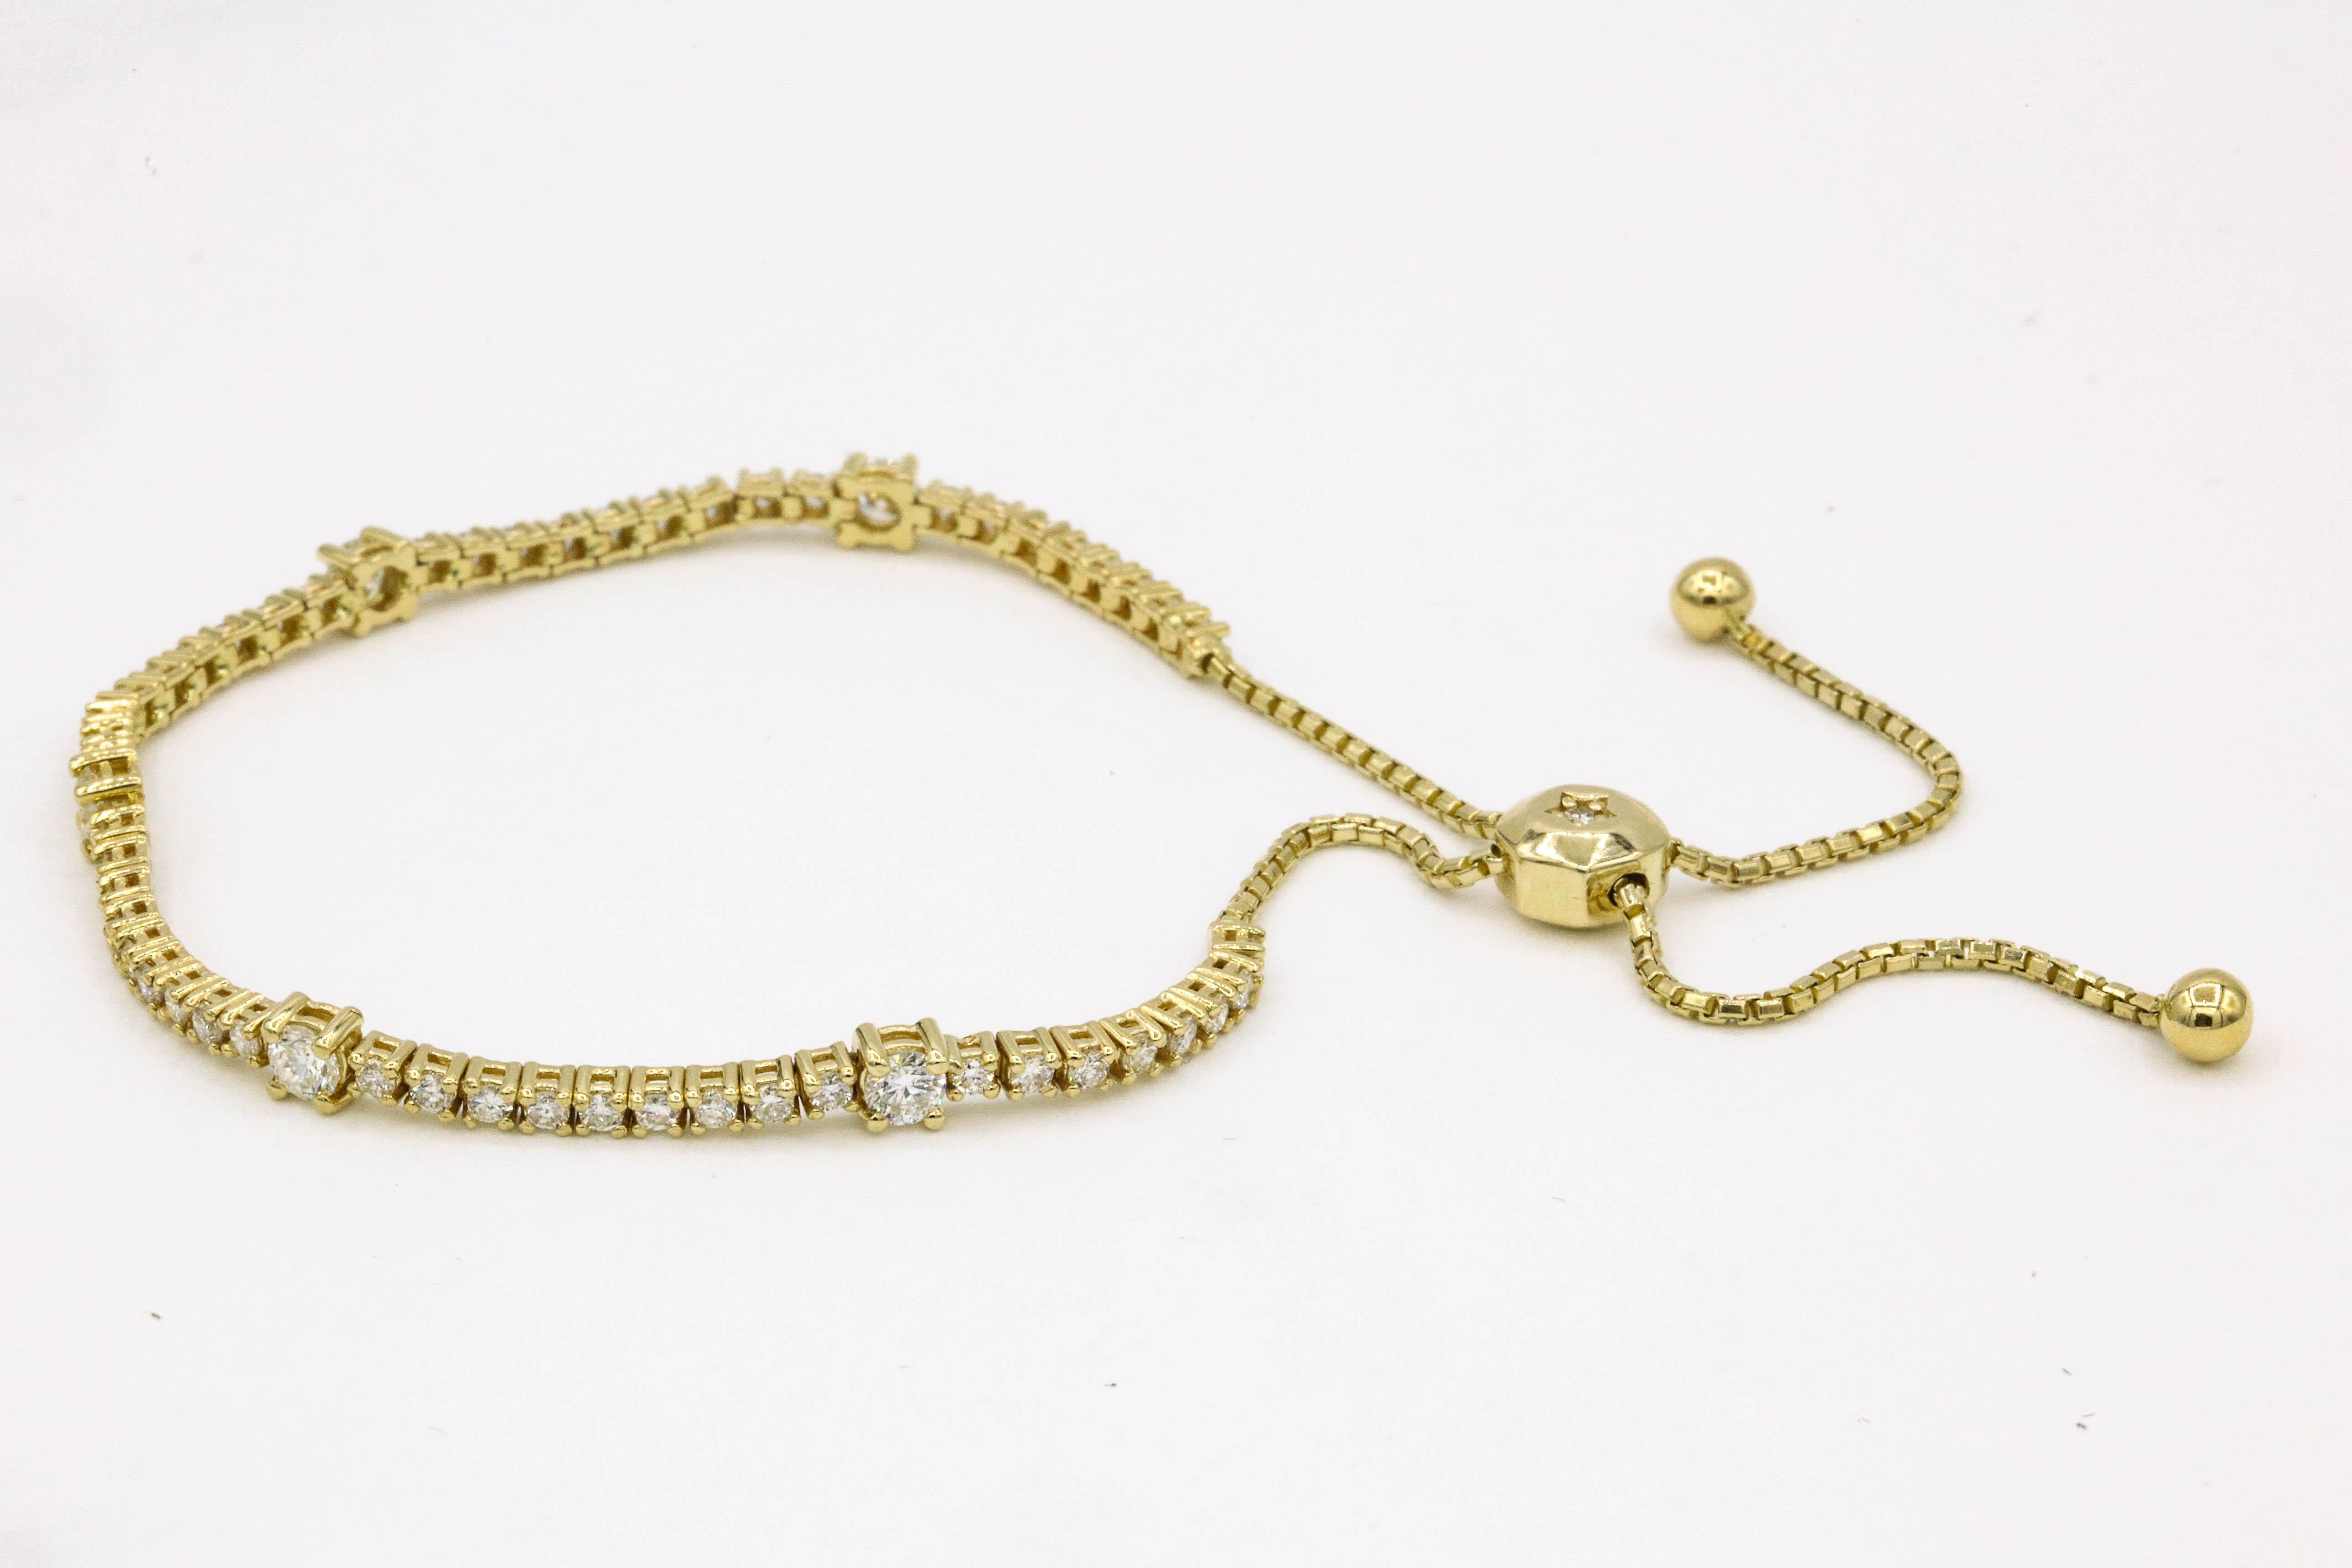 Erweiterbares Diamant-Tennisarmband mit 59 runden Brillanten mit einem Gewicht von ca. 2 Karat, aus 14 Karat Gelbgold.
Erhältlich in Weißgold.  